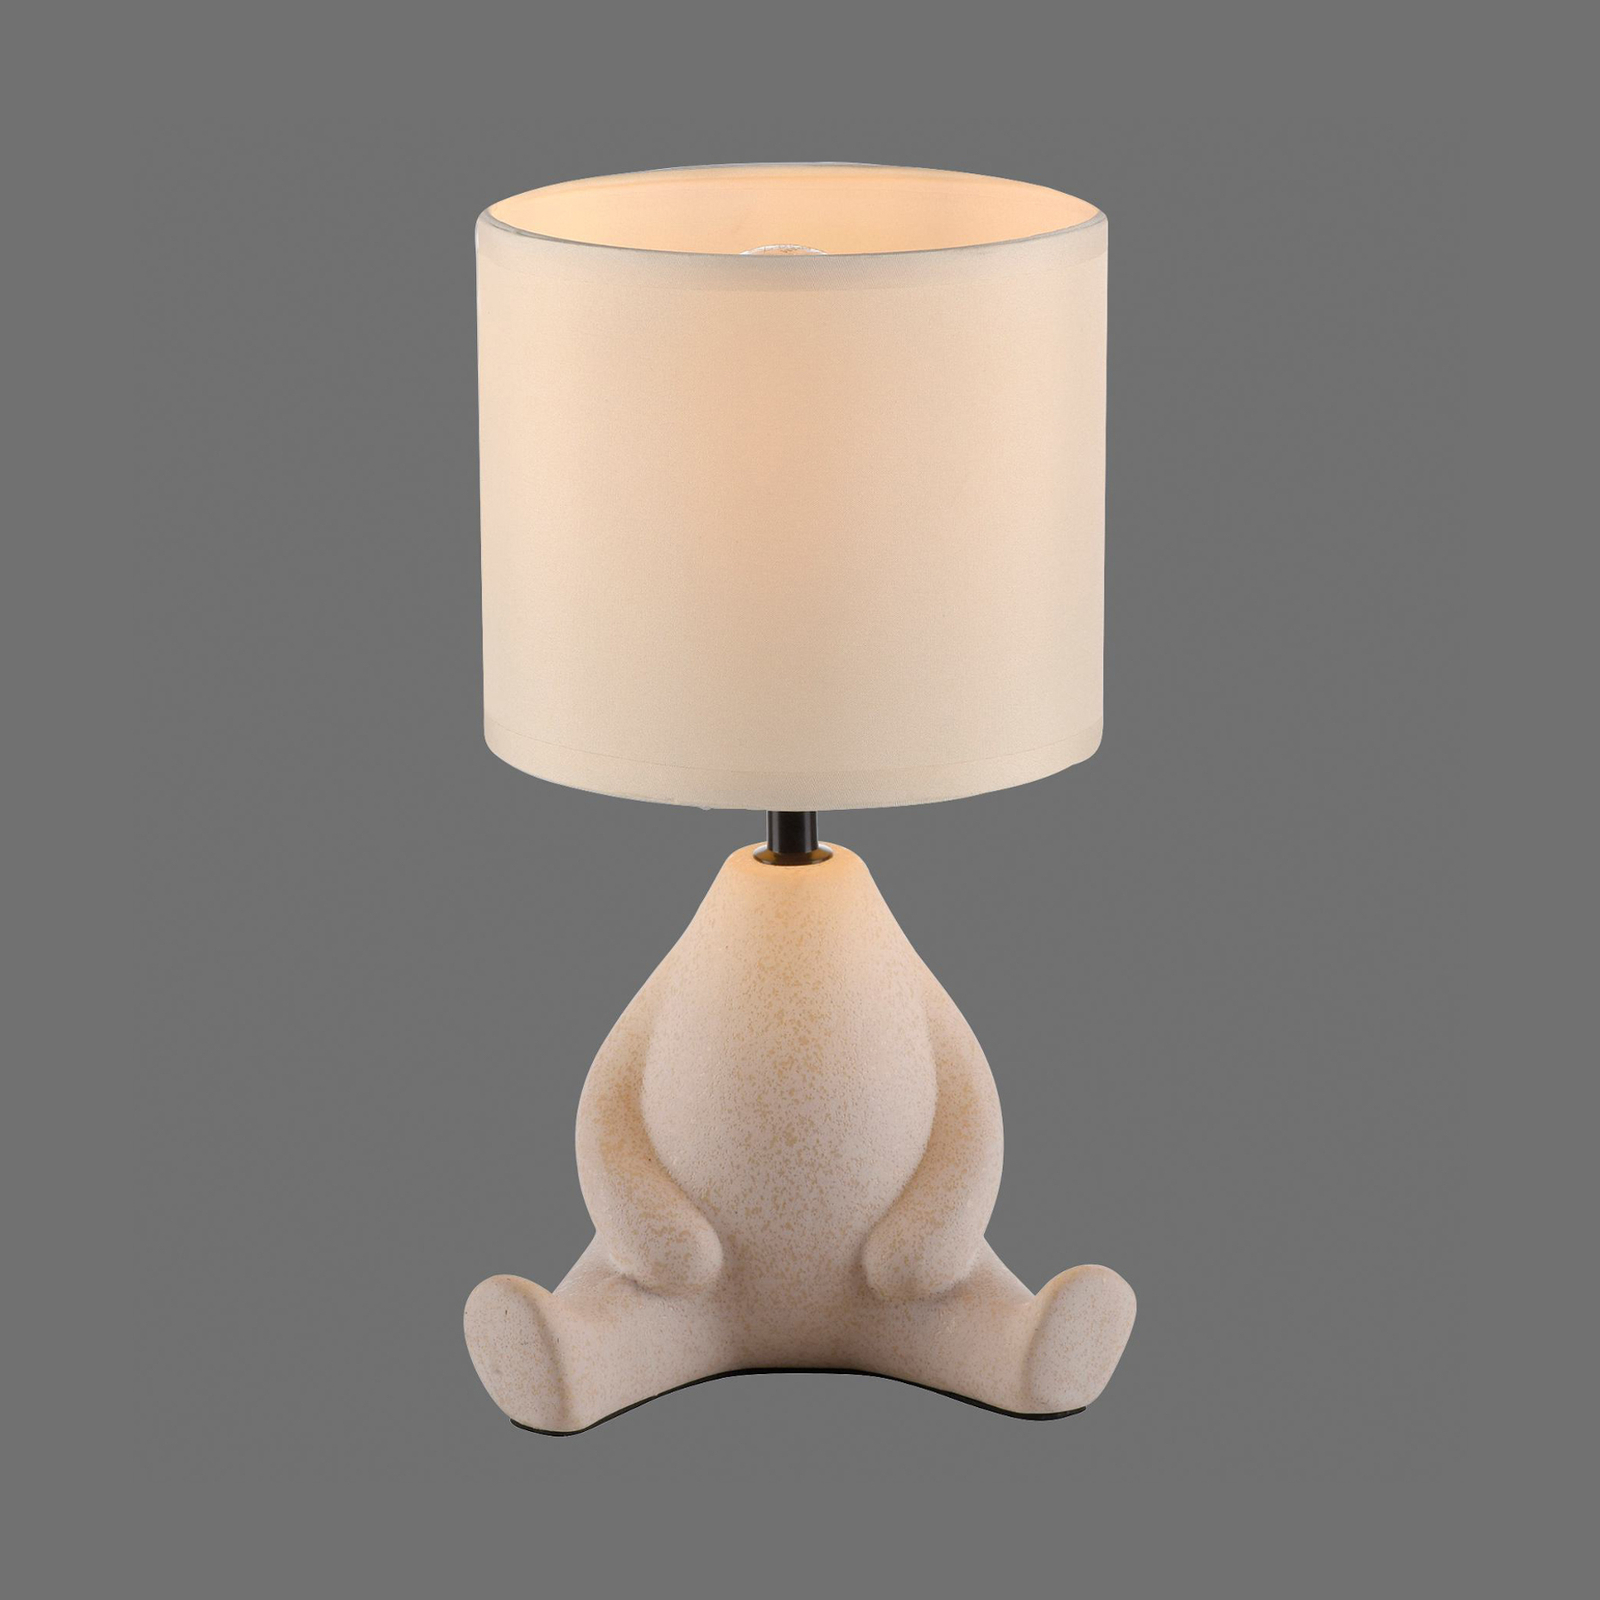 JUST LIGHT. Ted bordslampa, keramik, sittande, sandbeige